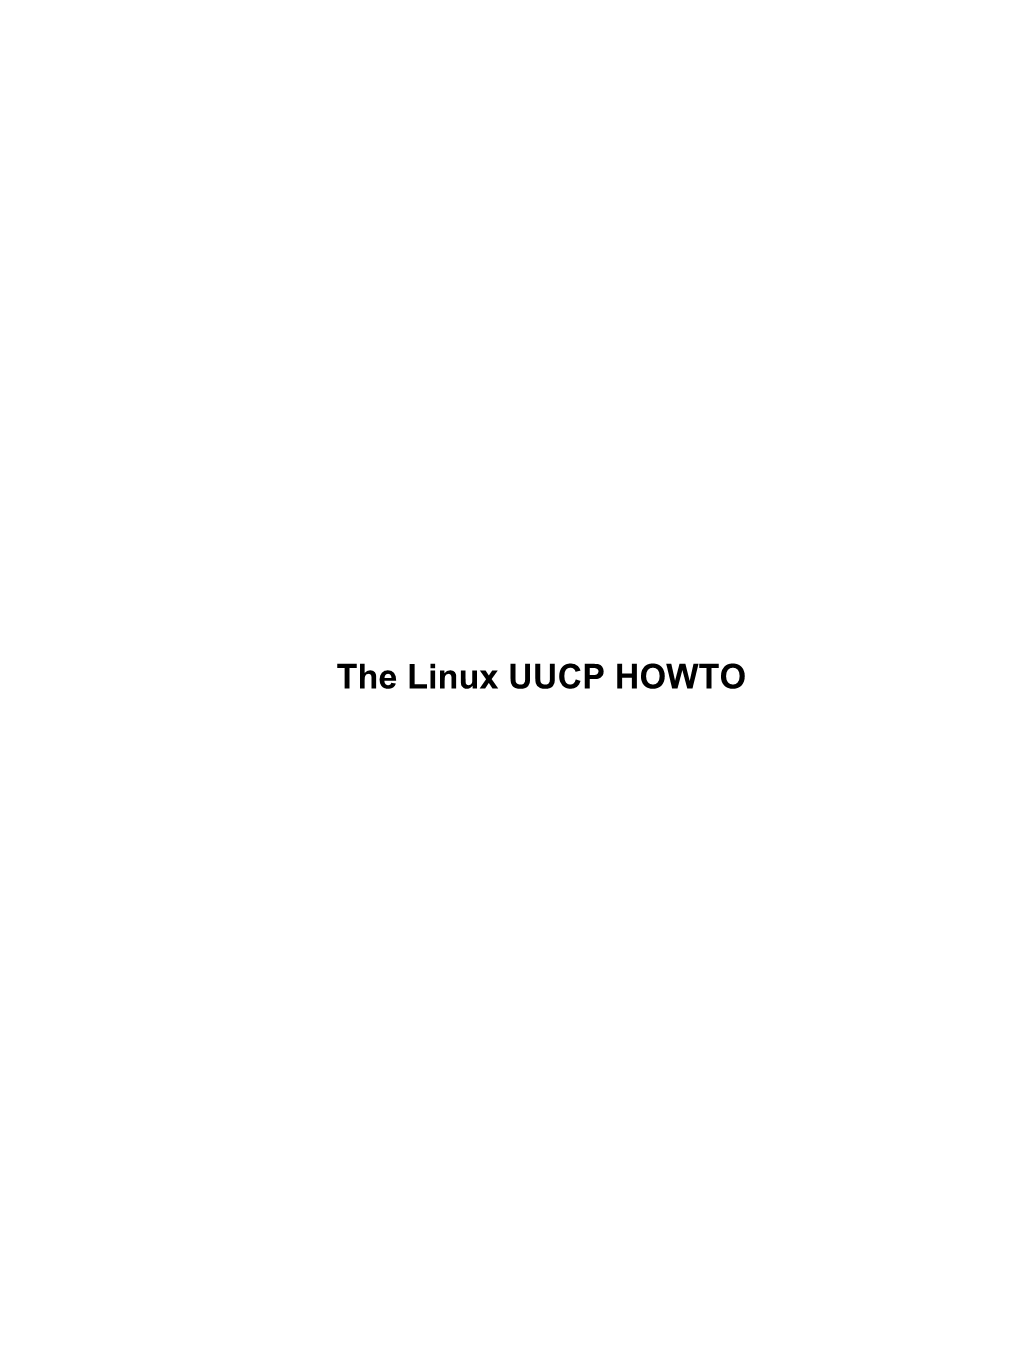 The Linux UUCP HOWTO the Linux UUCP HOWTO